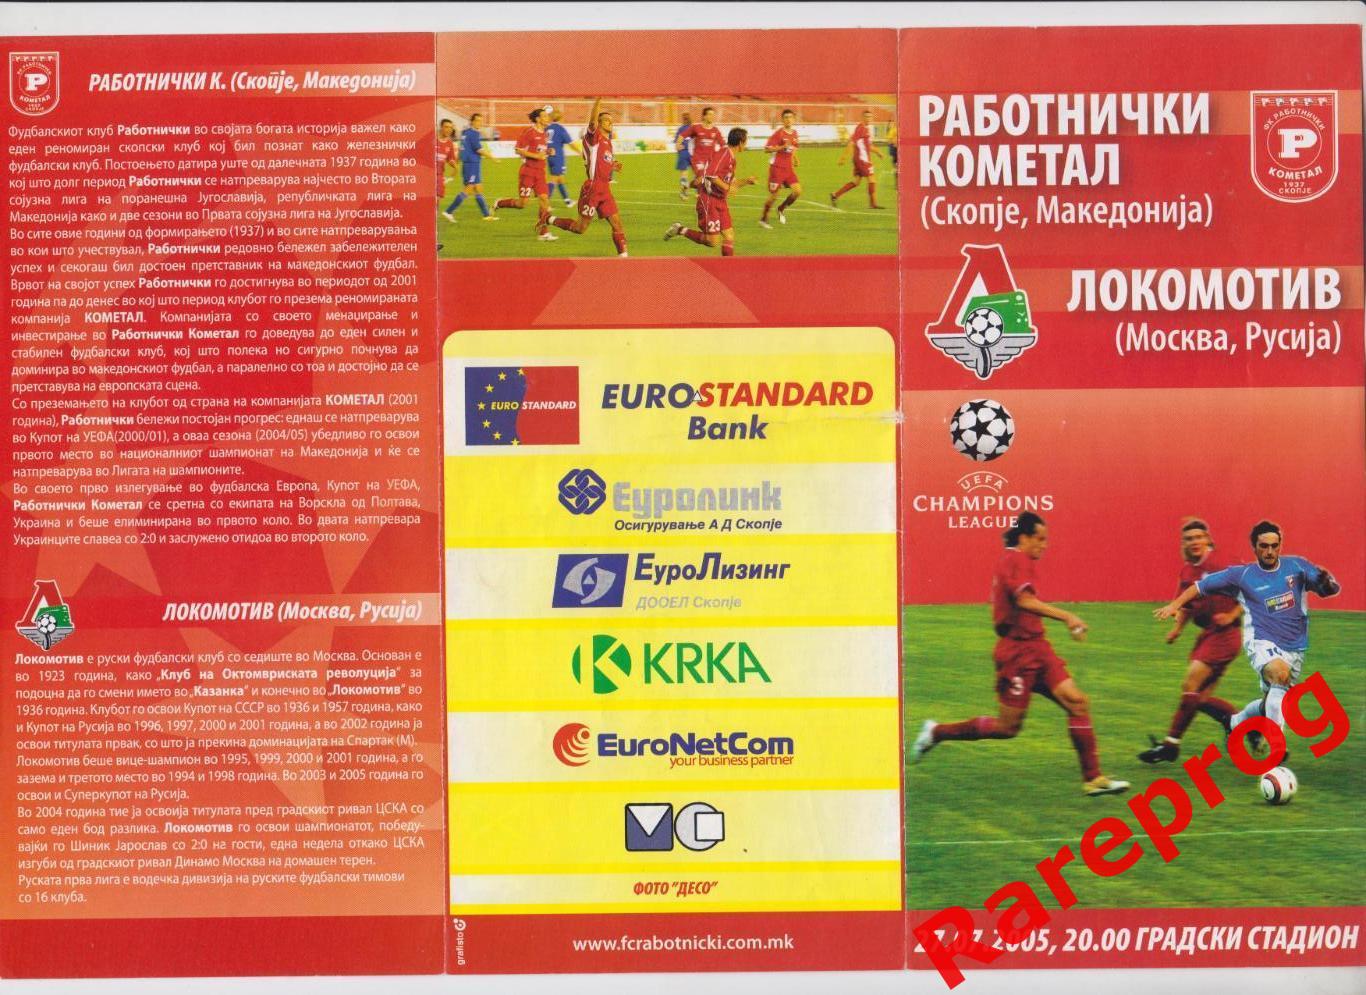 Работнички Македония - Локомотив Москва Россия - 2005 кубок ЛЧ УЕФА